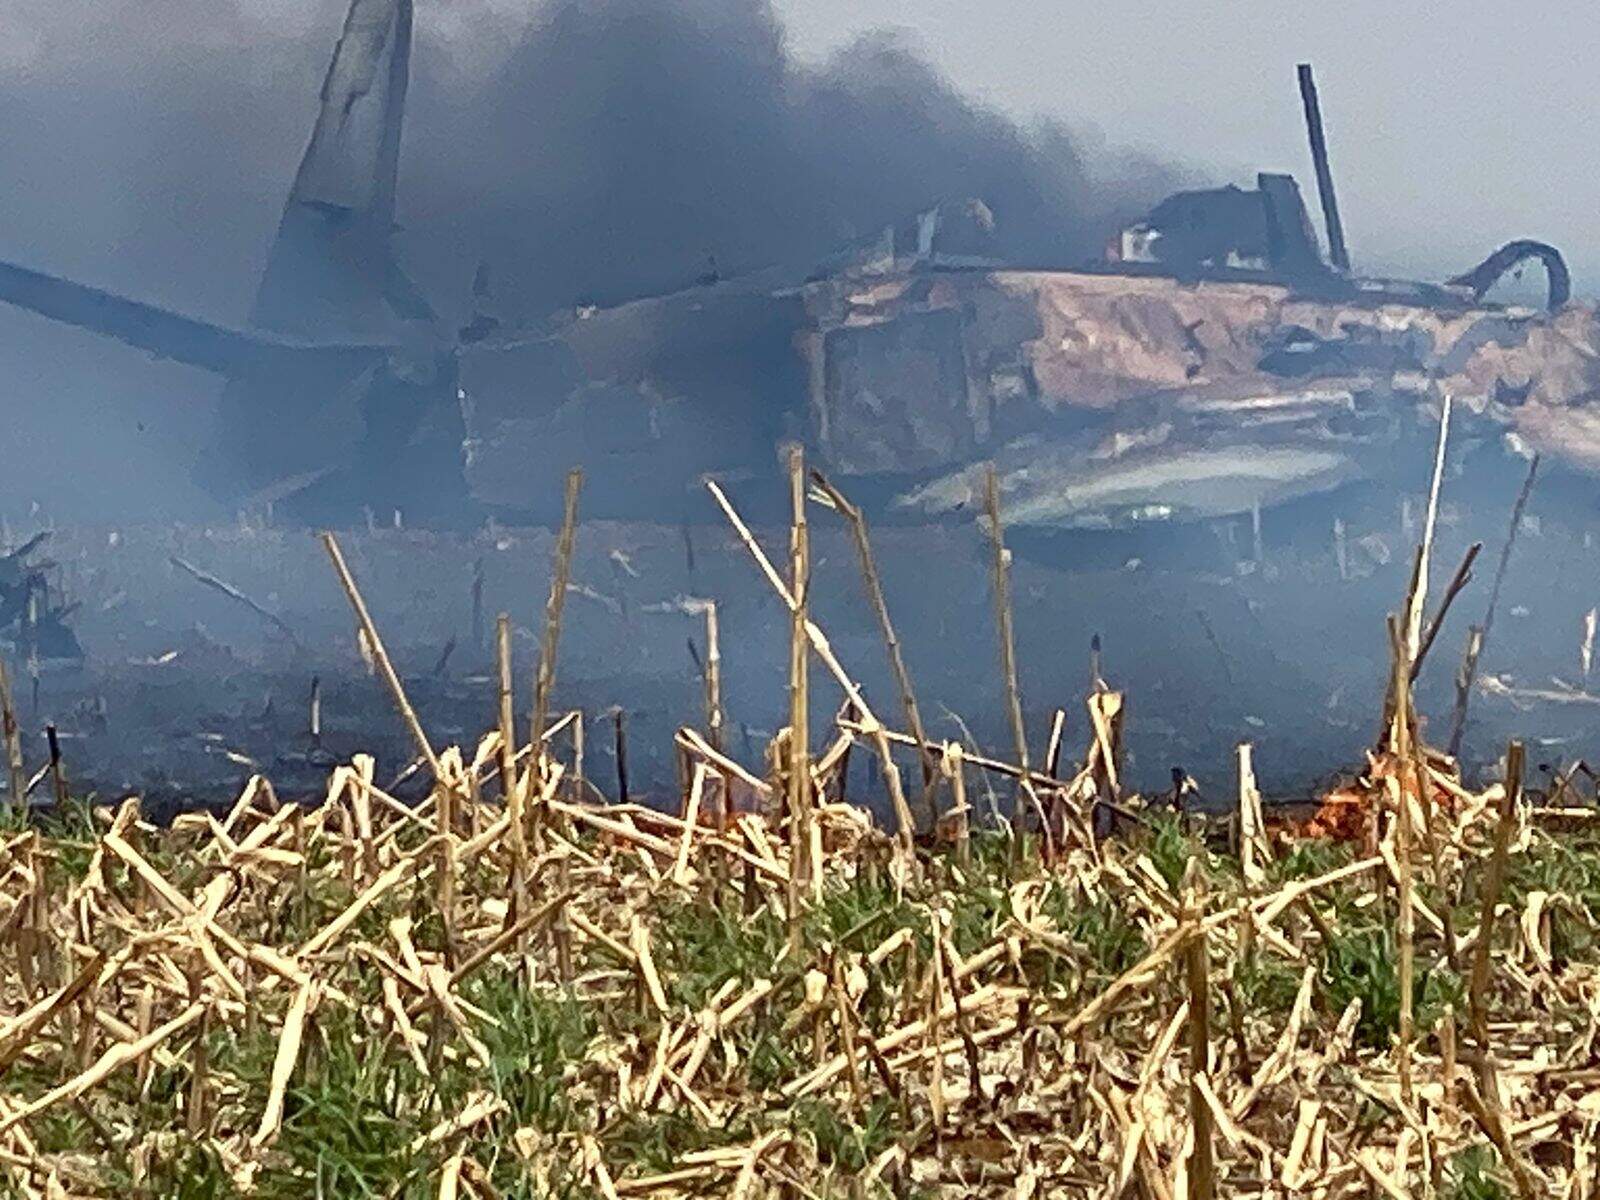 Aeronave completamente queimada em meio a muita fumaça. (Foto: Direto das Ruas)